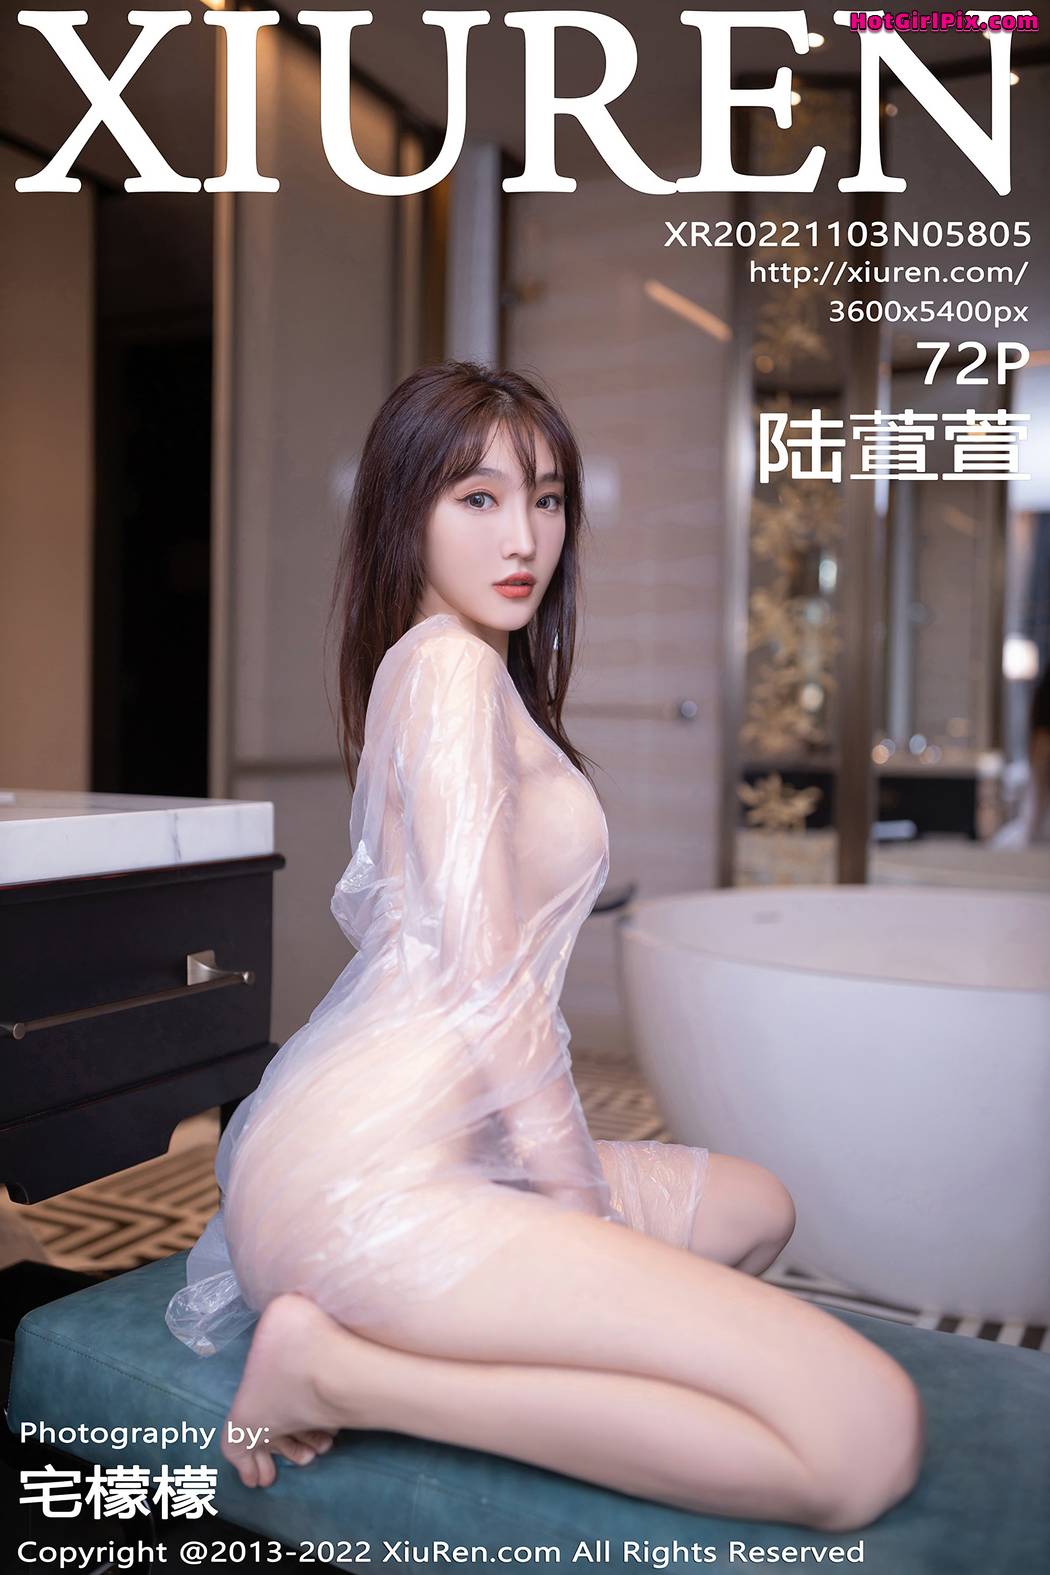 [XIUREN] No.5805 Lu Xuan Xuan 陆萱萱 Cover Photo